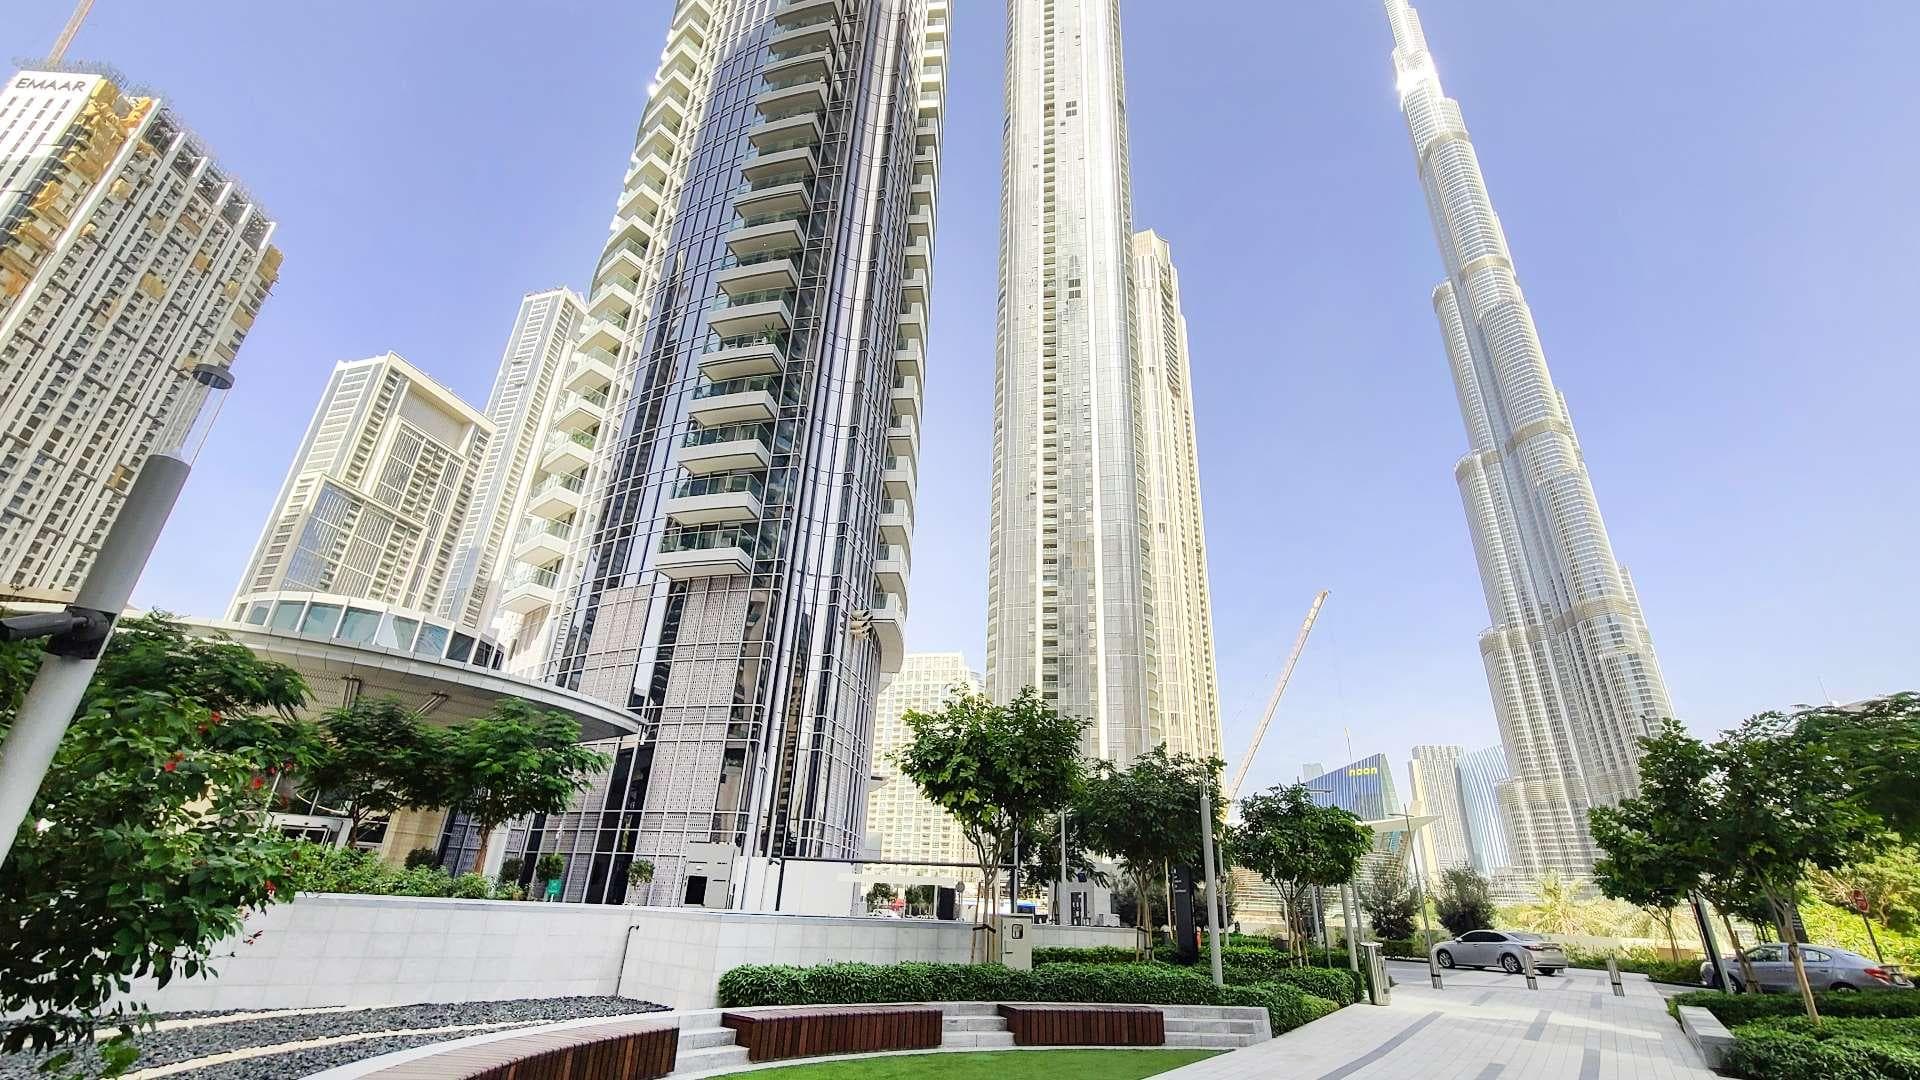 2 Bedroom Apartment For Rent Burj Khalifa Area Lp19995 195eb0e225025100.jpg